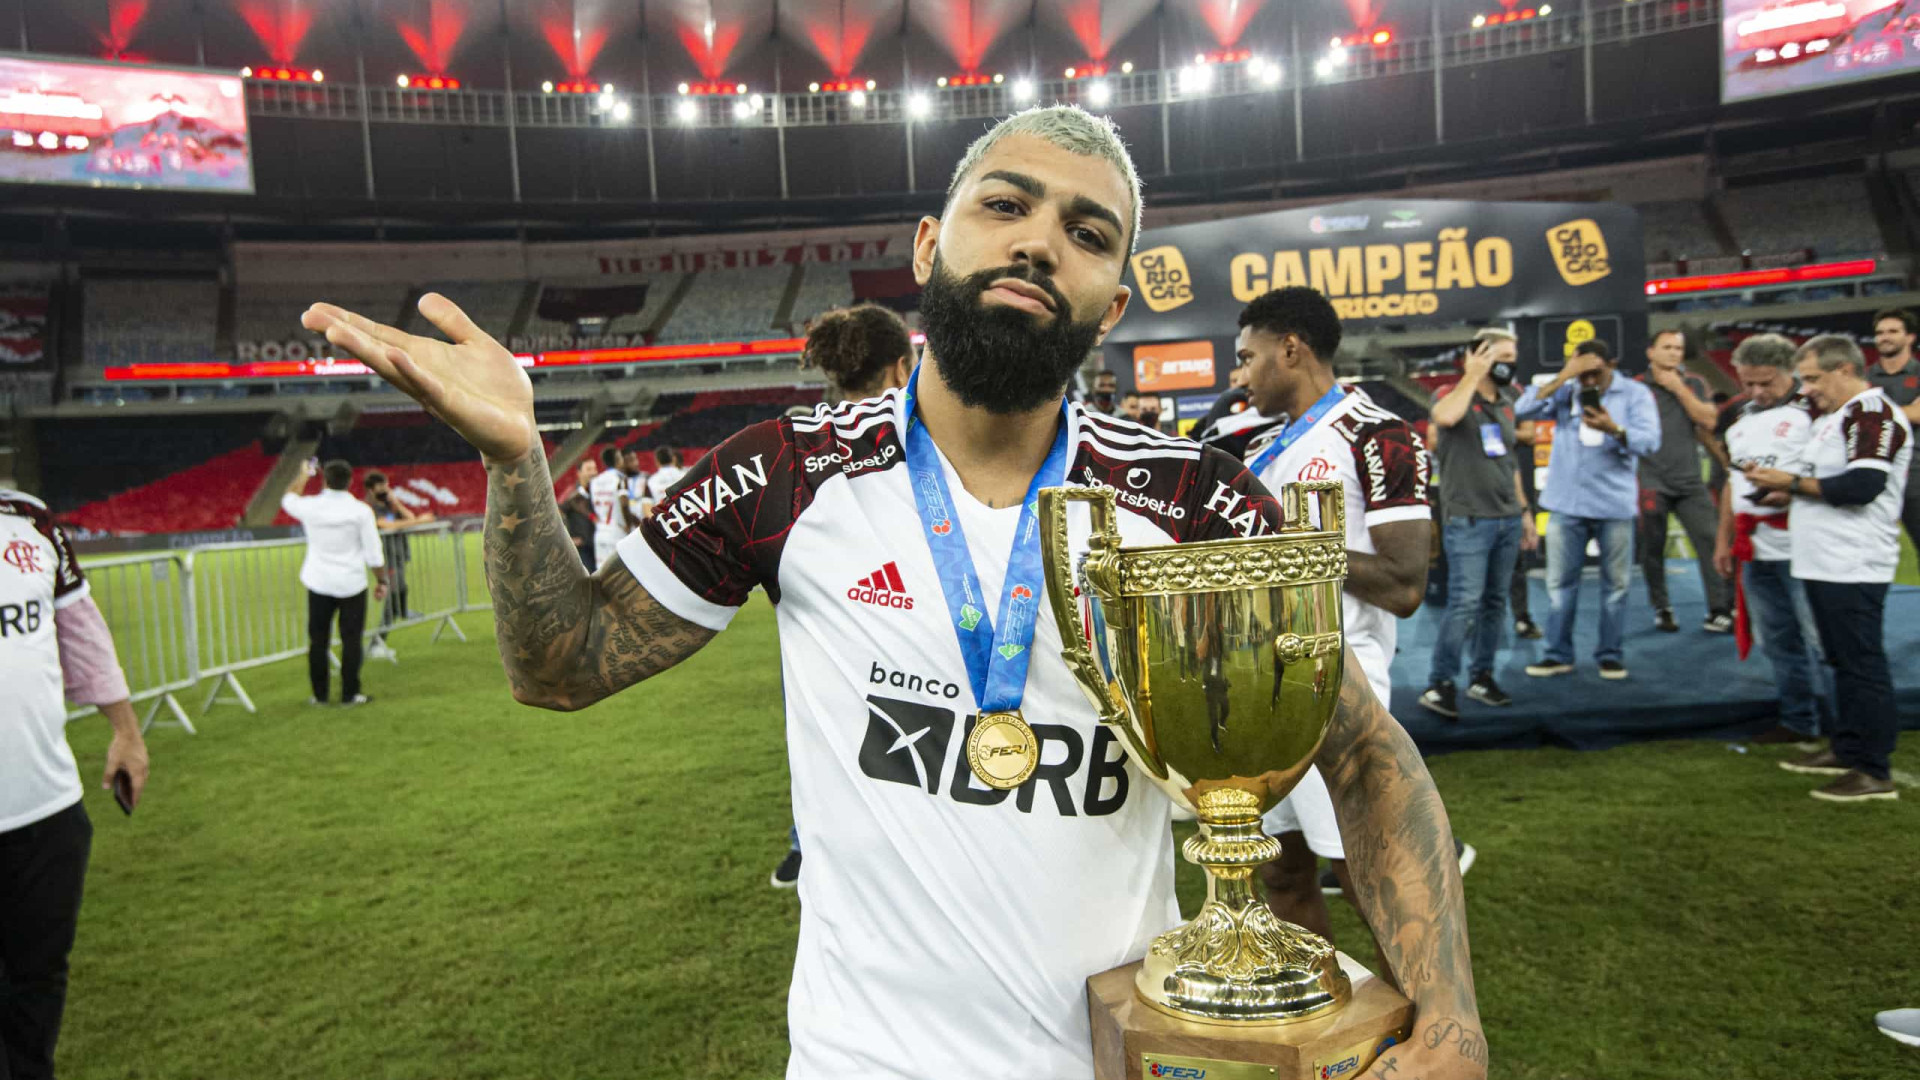 Decisivo, Gabriel vibra com momento e dedica título do Flamengo a MC Kevin